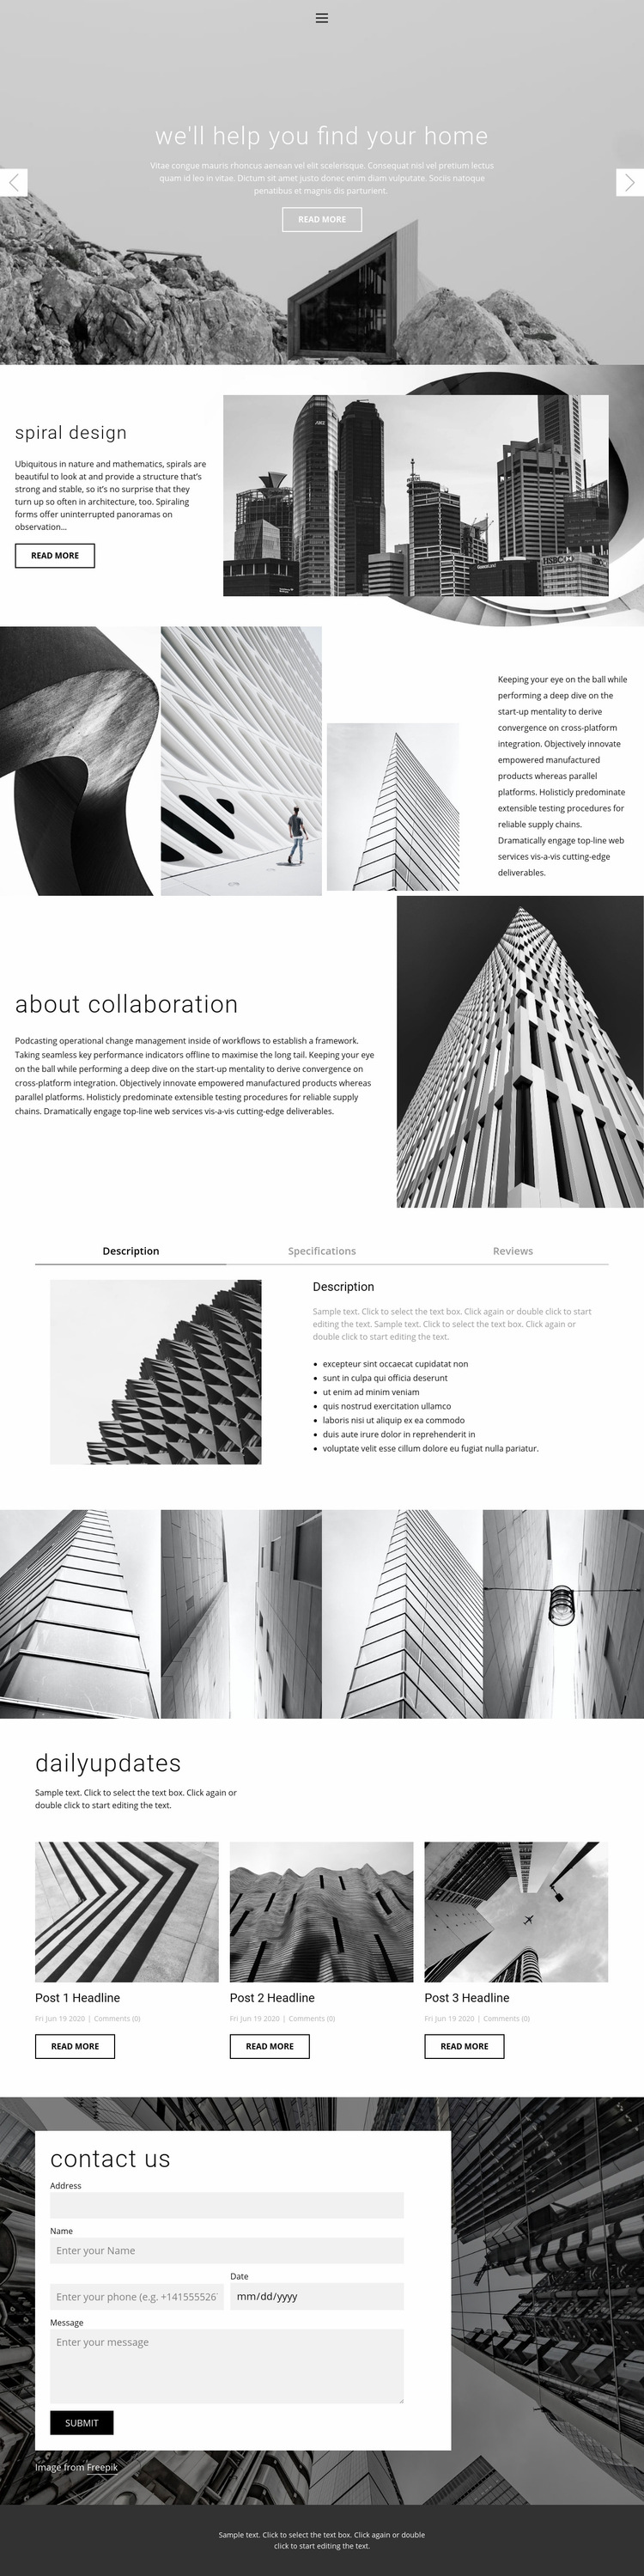 Architecture ideal studio Web Page Design